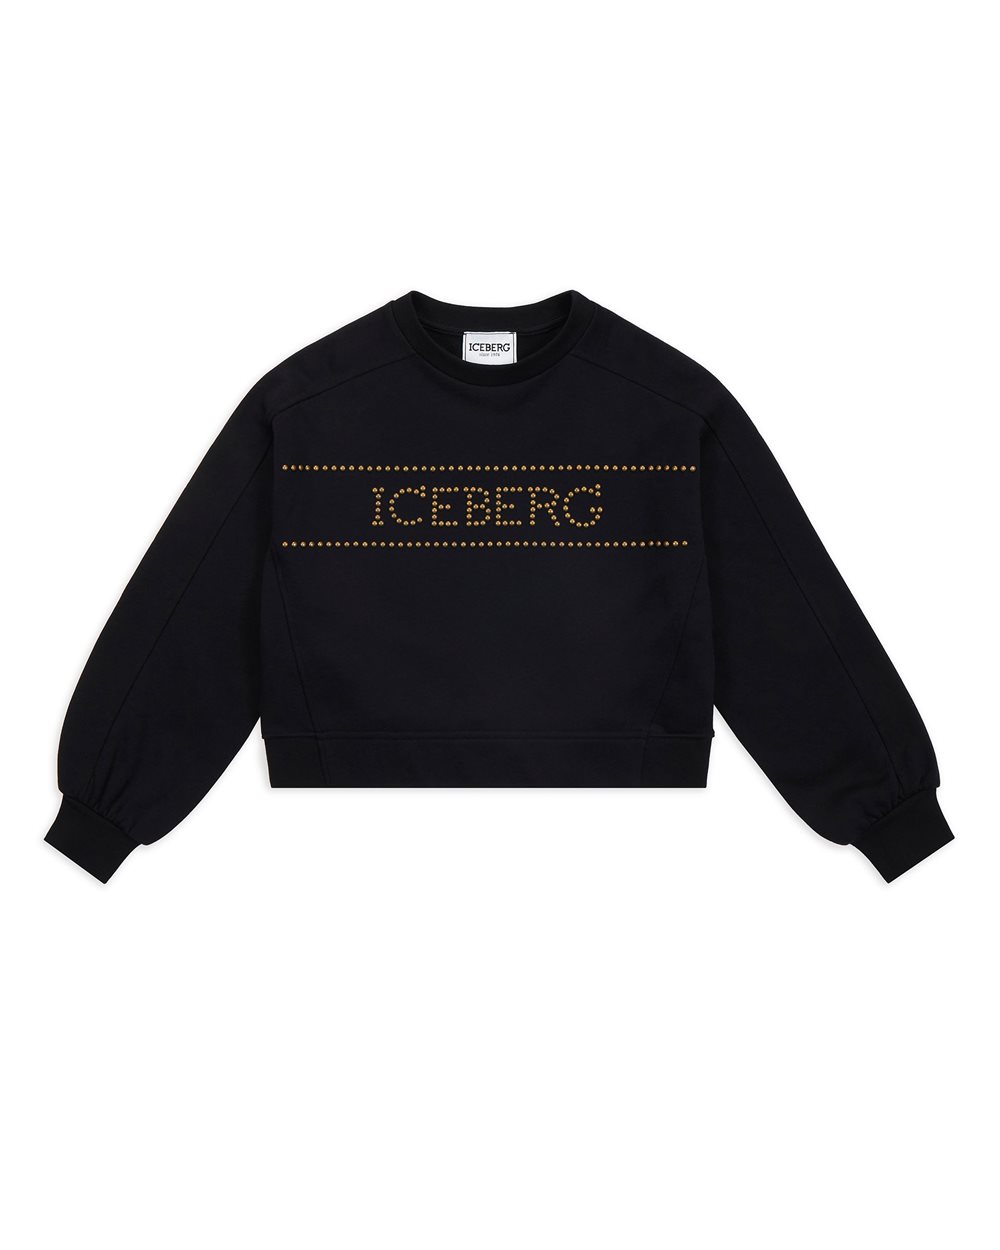 Felpa nera con logo - Bambina | Iceberg - Official Website